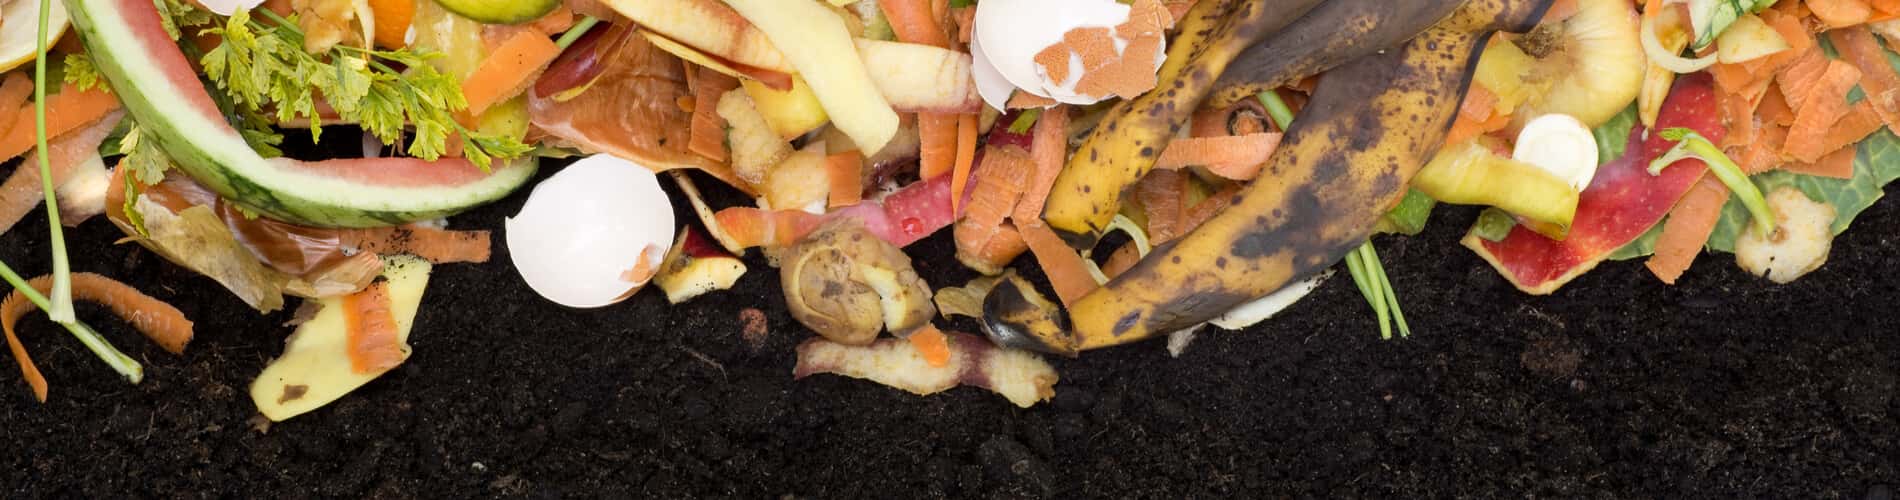 Kompost selbst anlegen: drauf sollten Sie achten